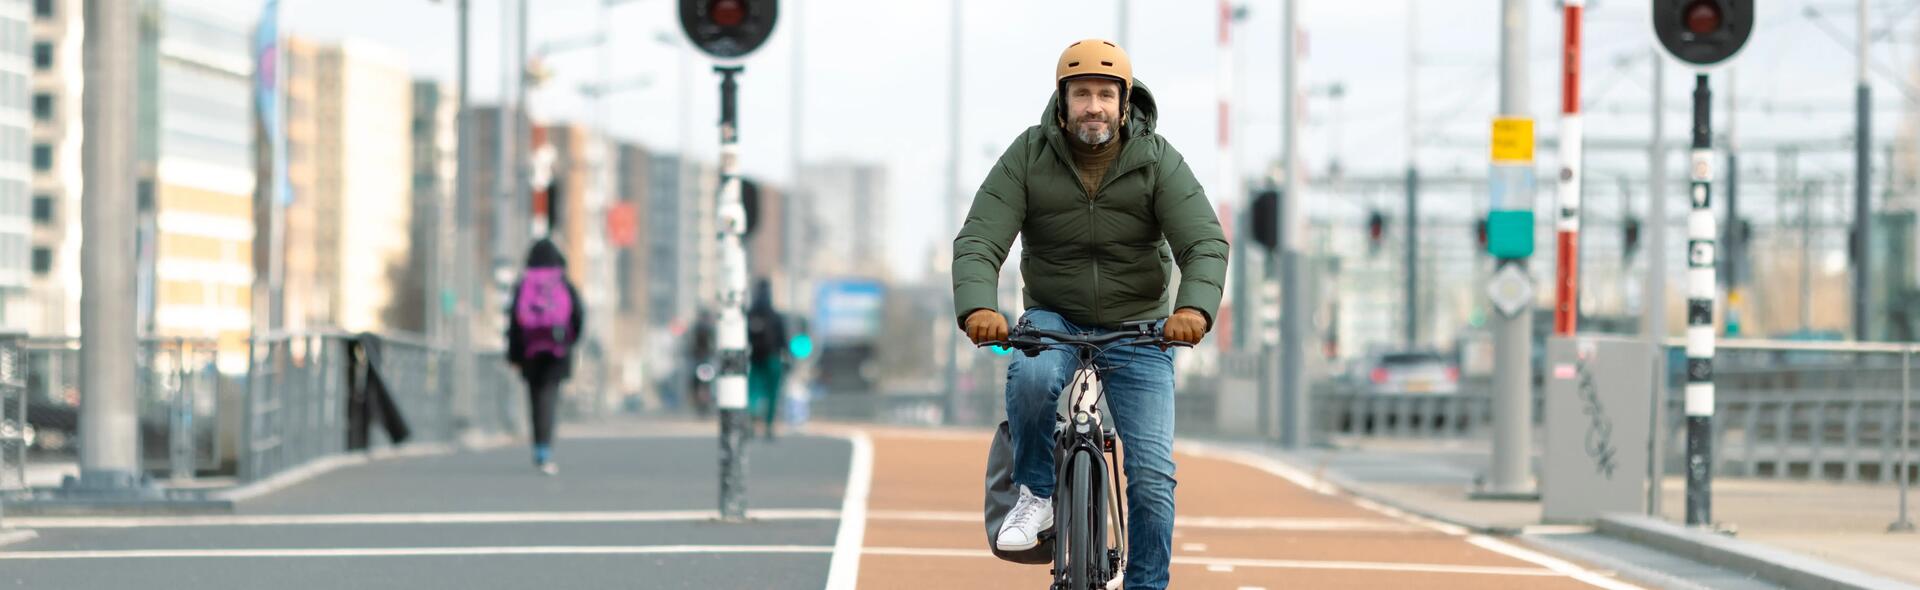 jeune homme qui s'essaye au vélo en ville tout en portant son casque